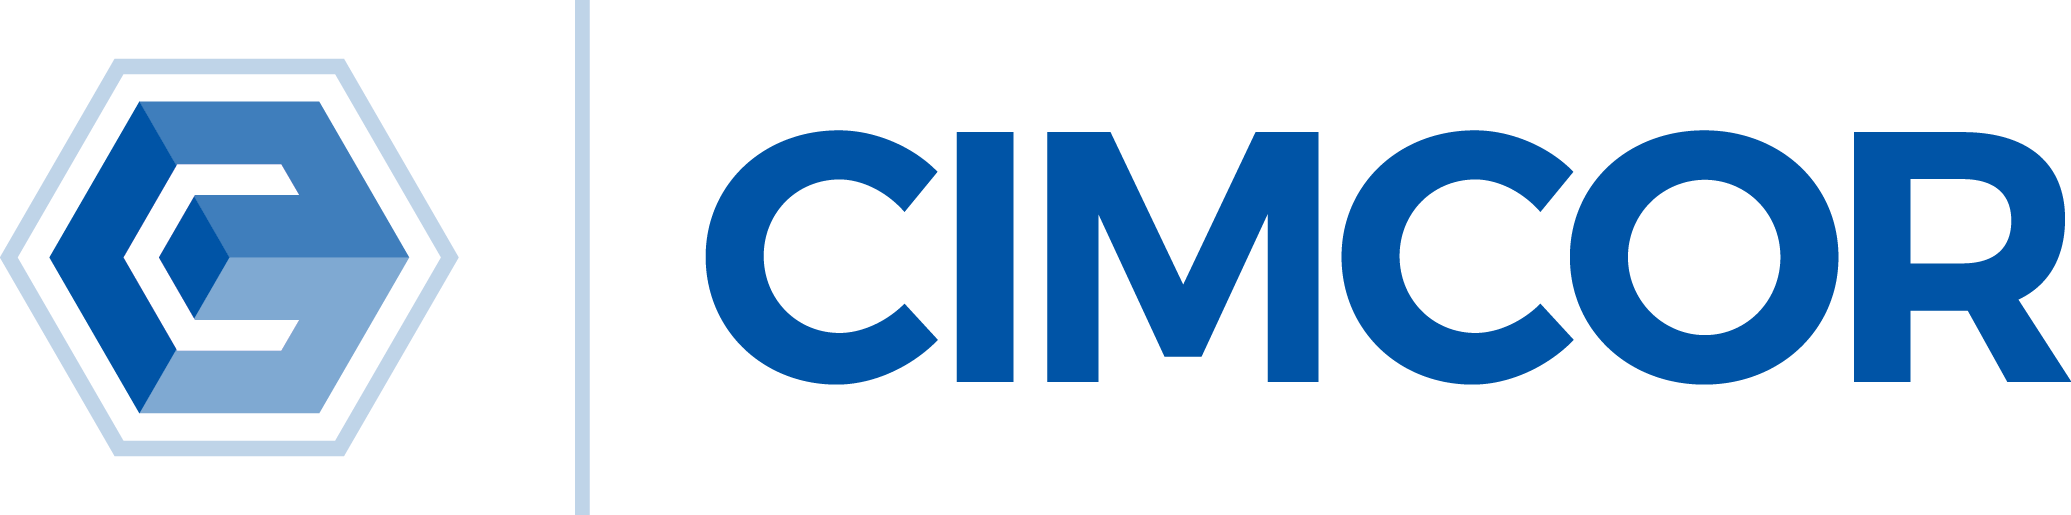 Cimcor, Inc Logo